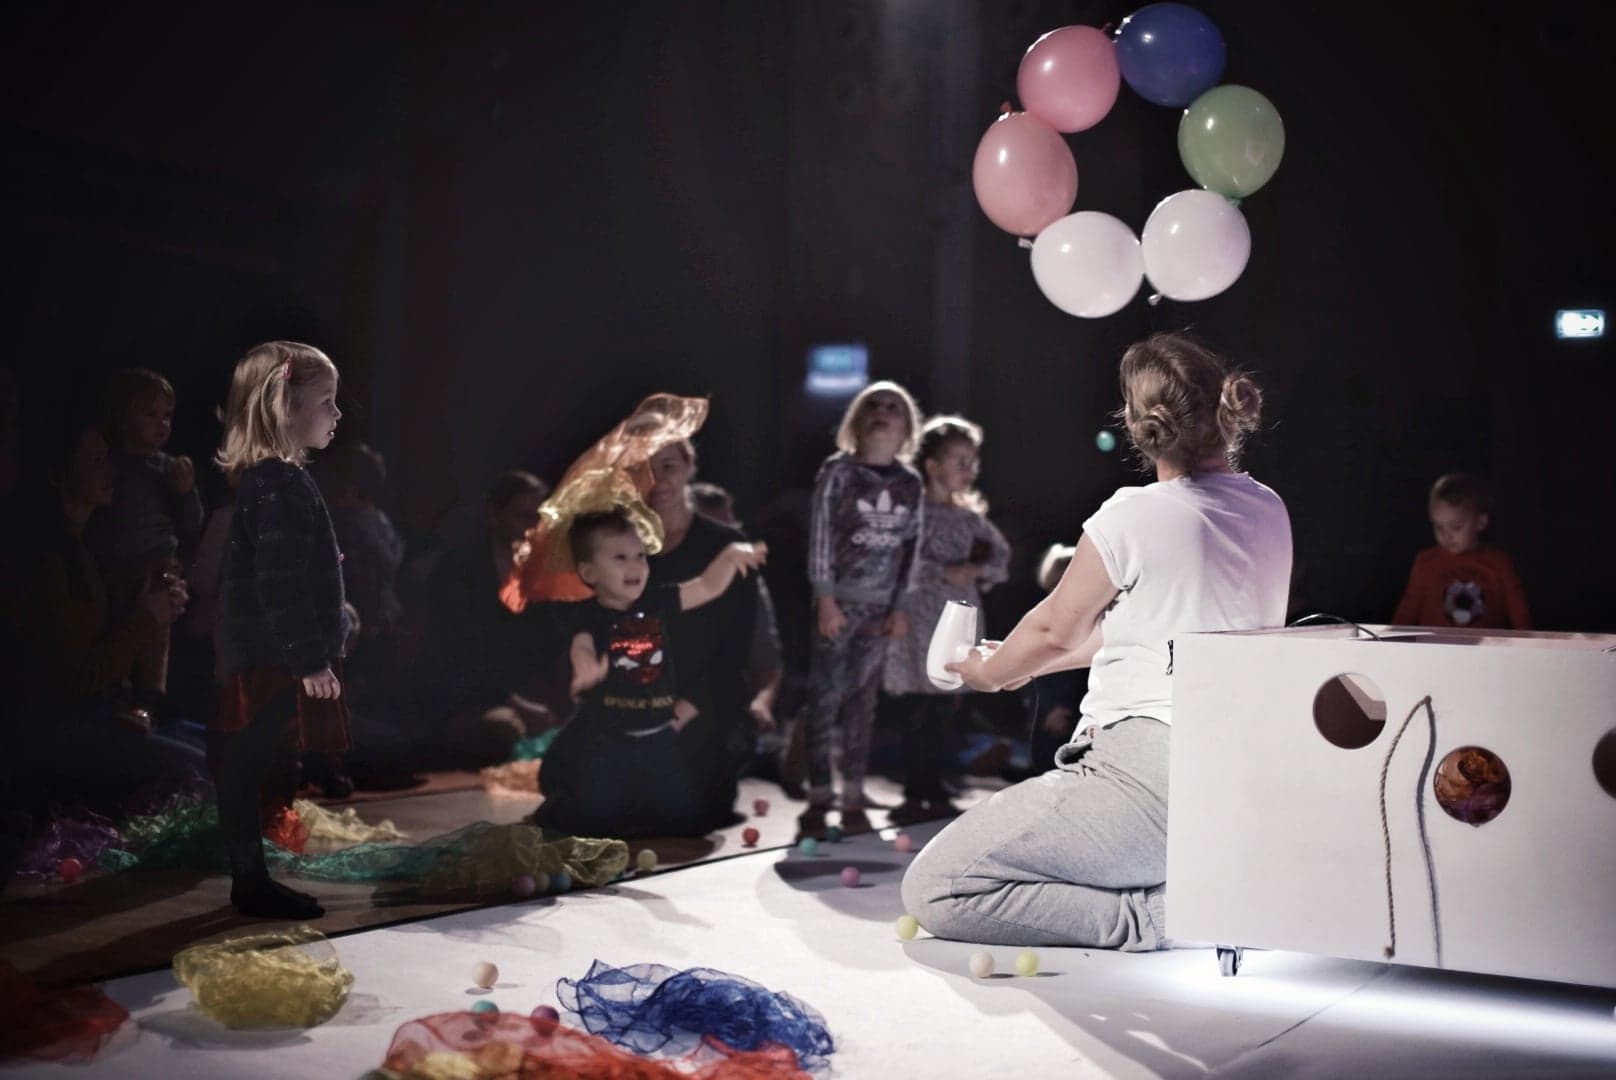 PaBaje - minispektakle muzyczno-sensoryczne dla rodzin z dziećmi